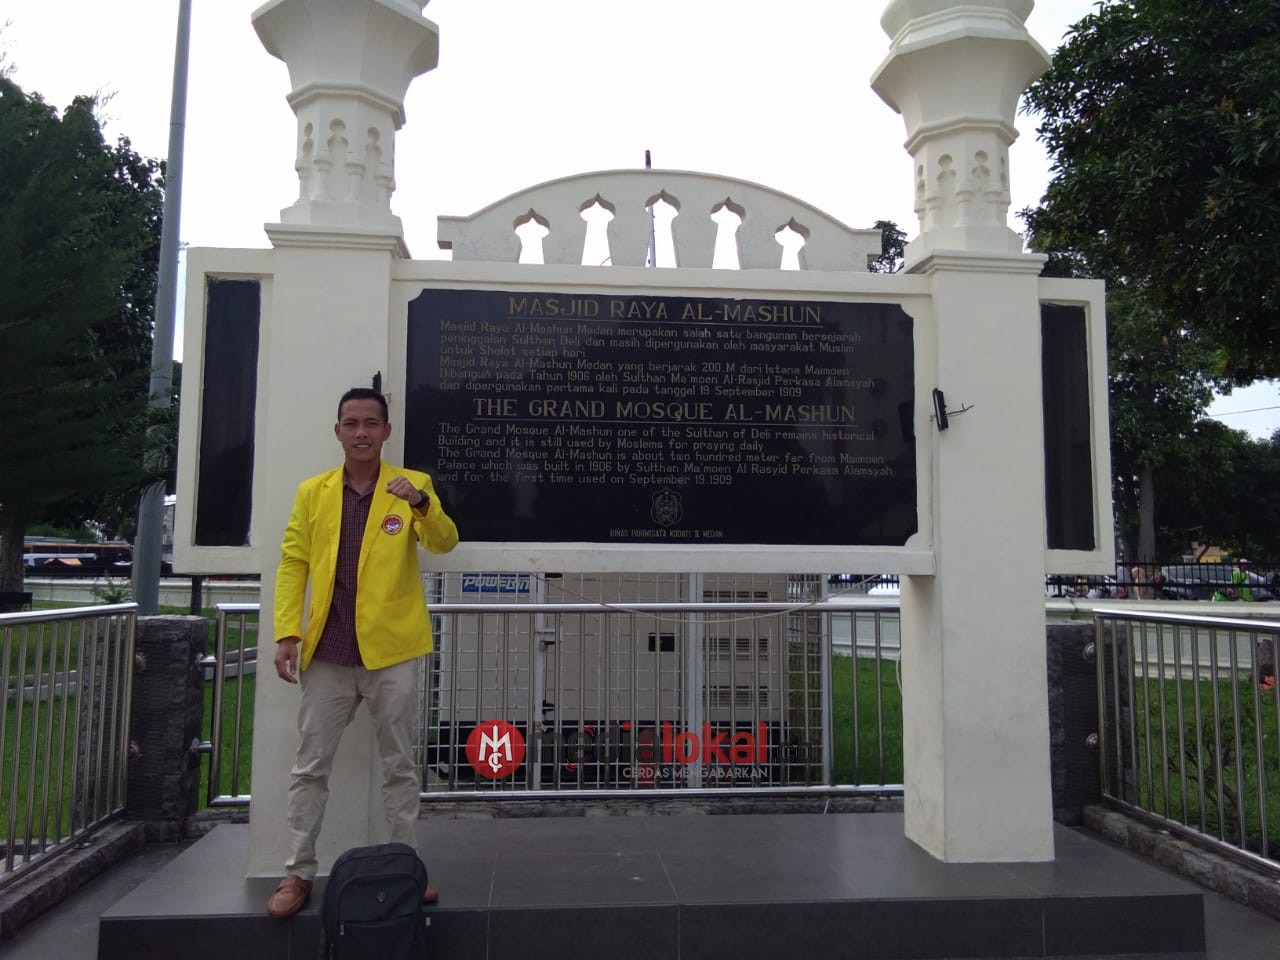 Ketua Asmara Tanjungbalai Meminta Walikota Evaluasi Lurah dan Kepling